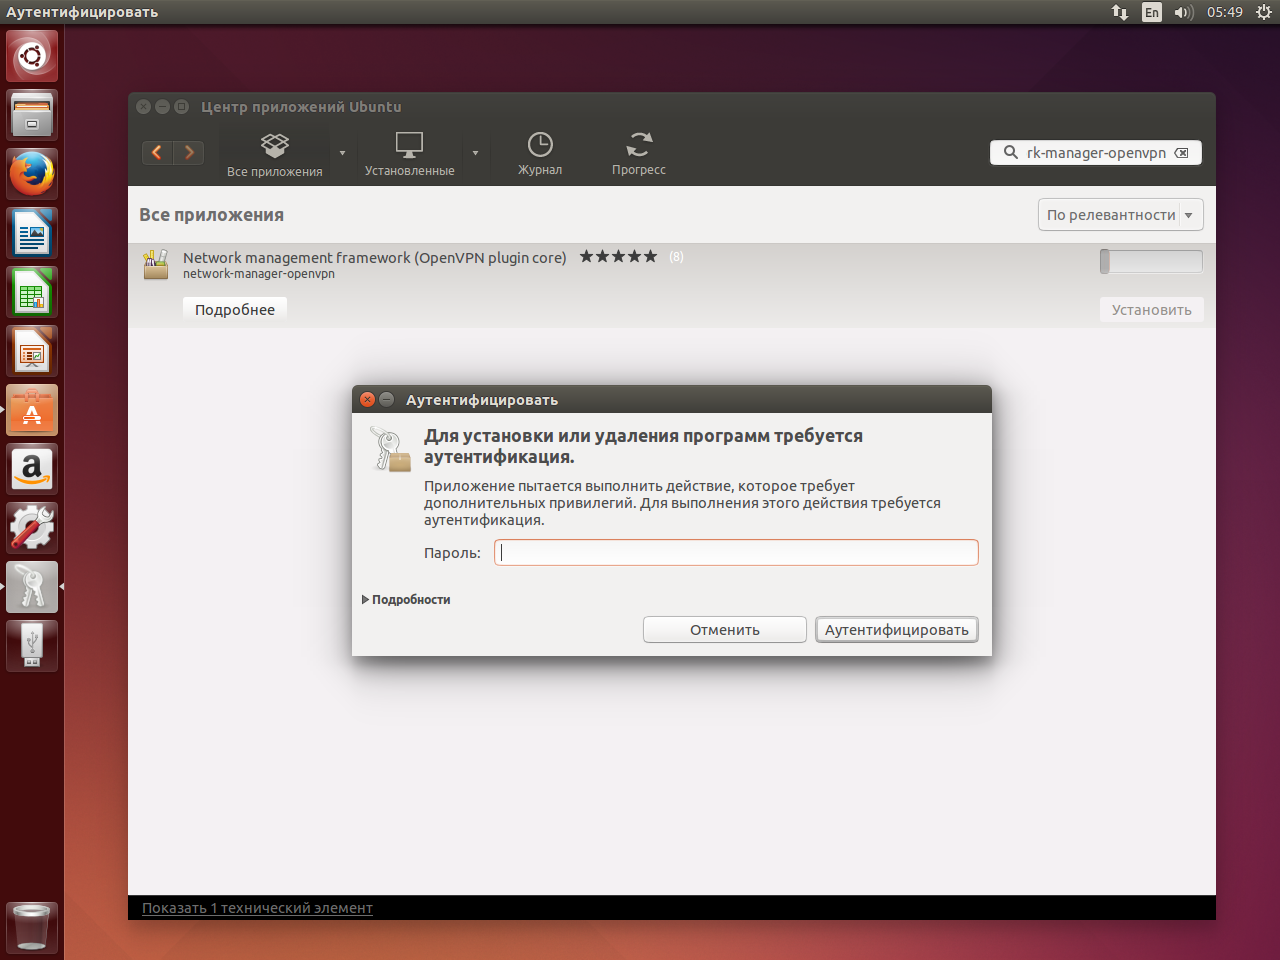 Для обеспечения защищенного шифрованного соединения между двумя устройствами на Ubuntu можно использовать инструмент OpenVPN Устанавливается он через Терминал